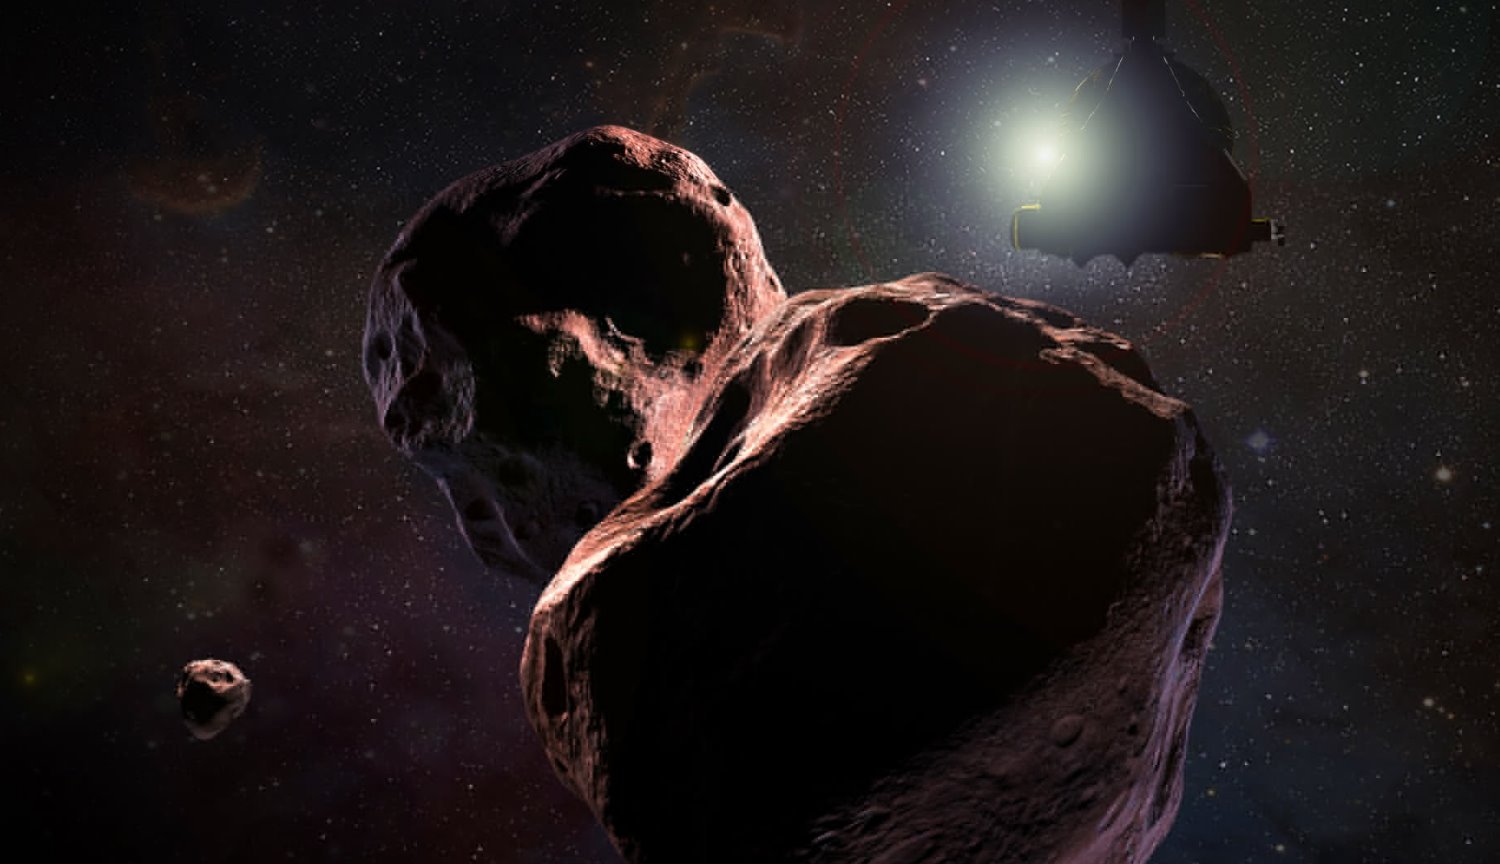 Nowa zagadka dla naukowców: dlaczego asteroida Ultima Thule ma сплющенную formę?